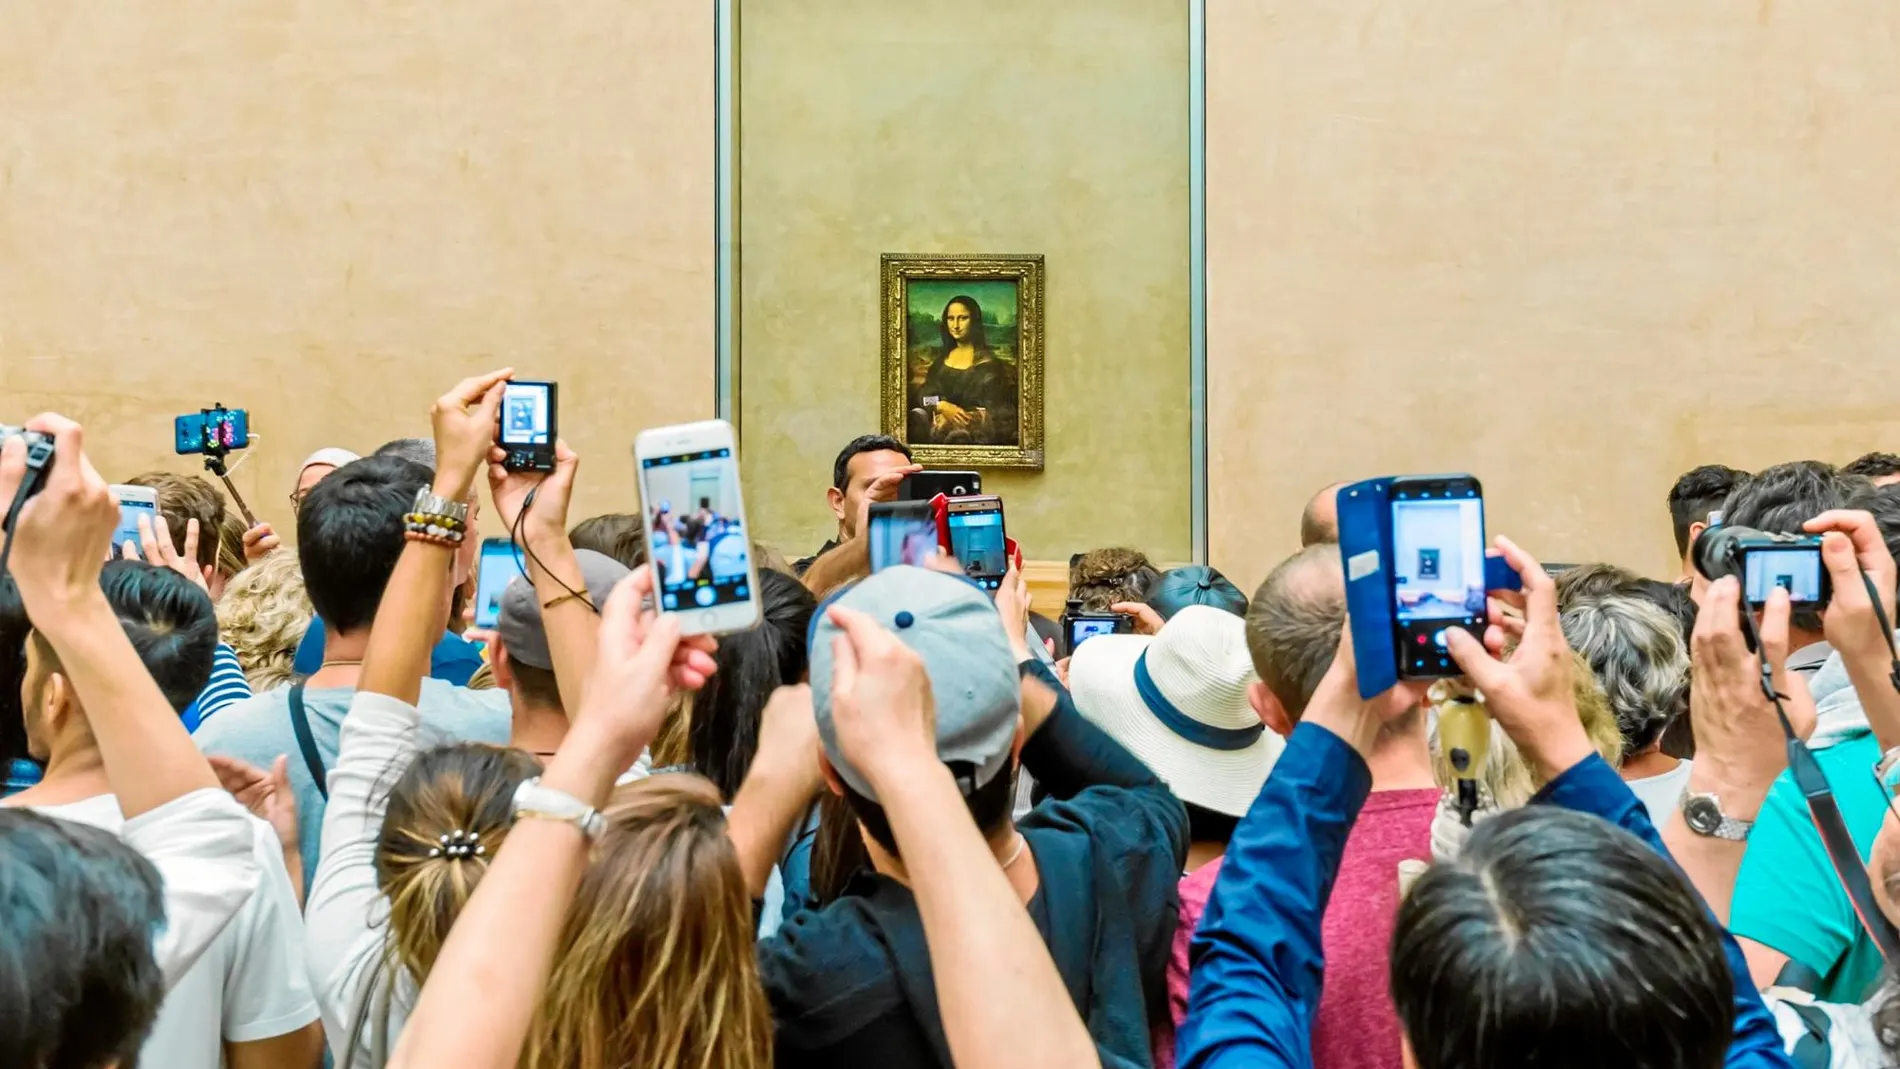 Los visitantes se agolpan en la sala de la «Mona Lisa» en el Museo del Louvre, que el año pasado registró 10,2 millones de entradas. Foto: Dreamstime